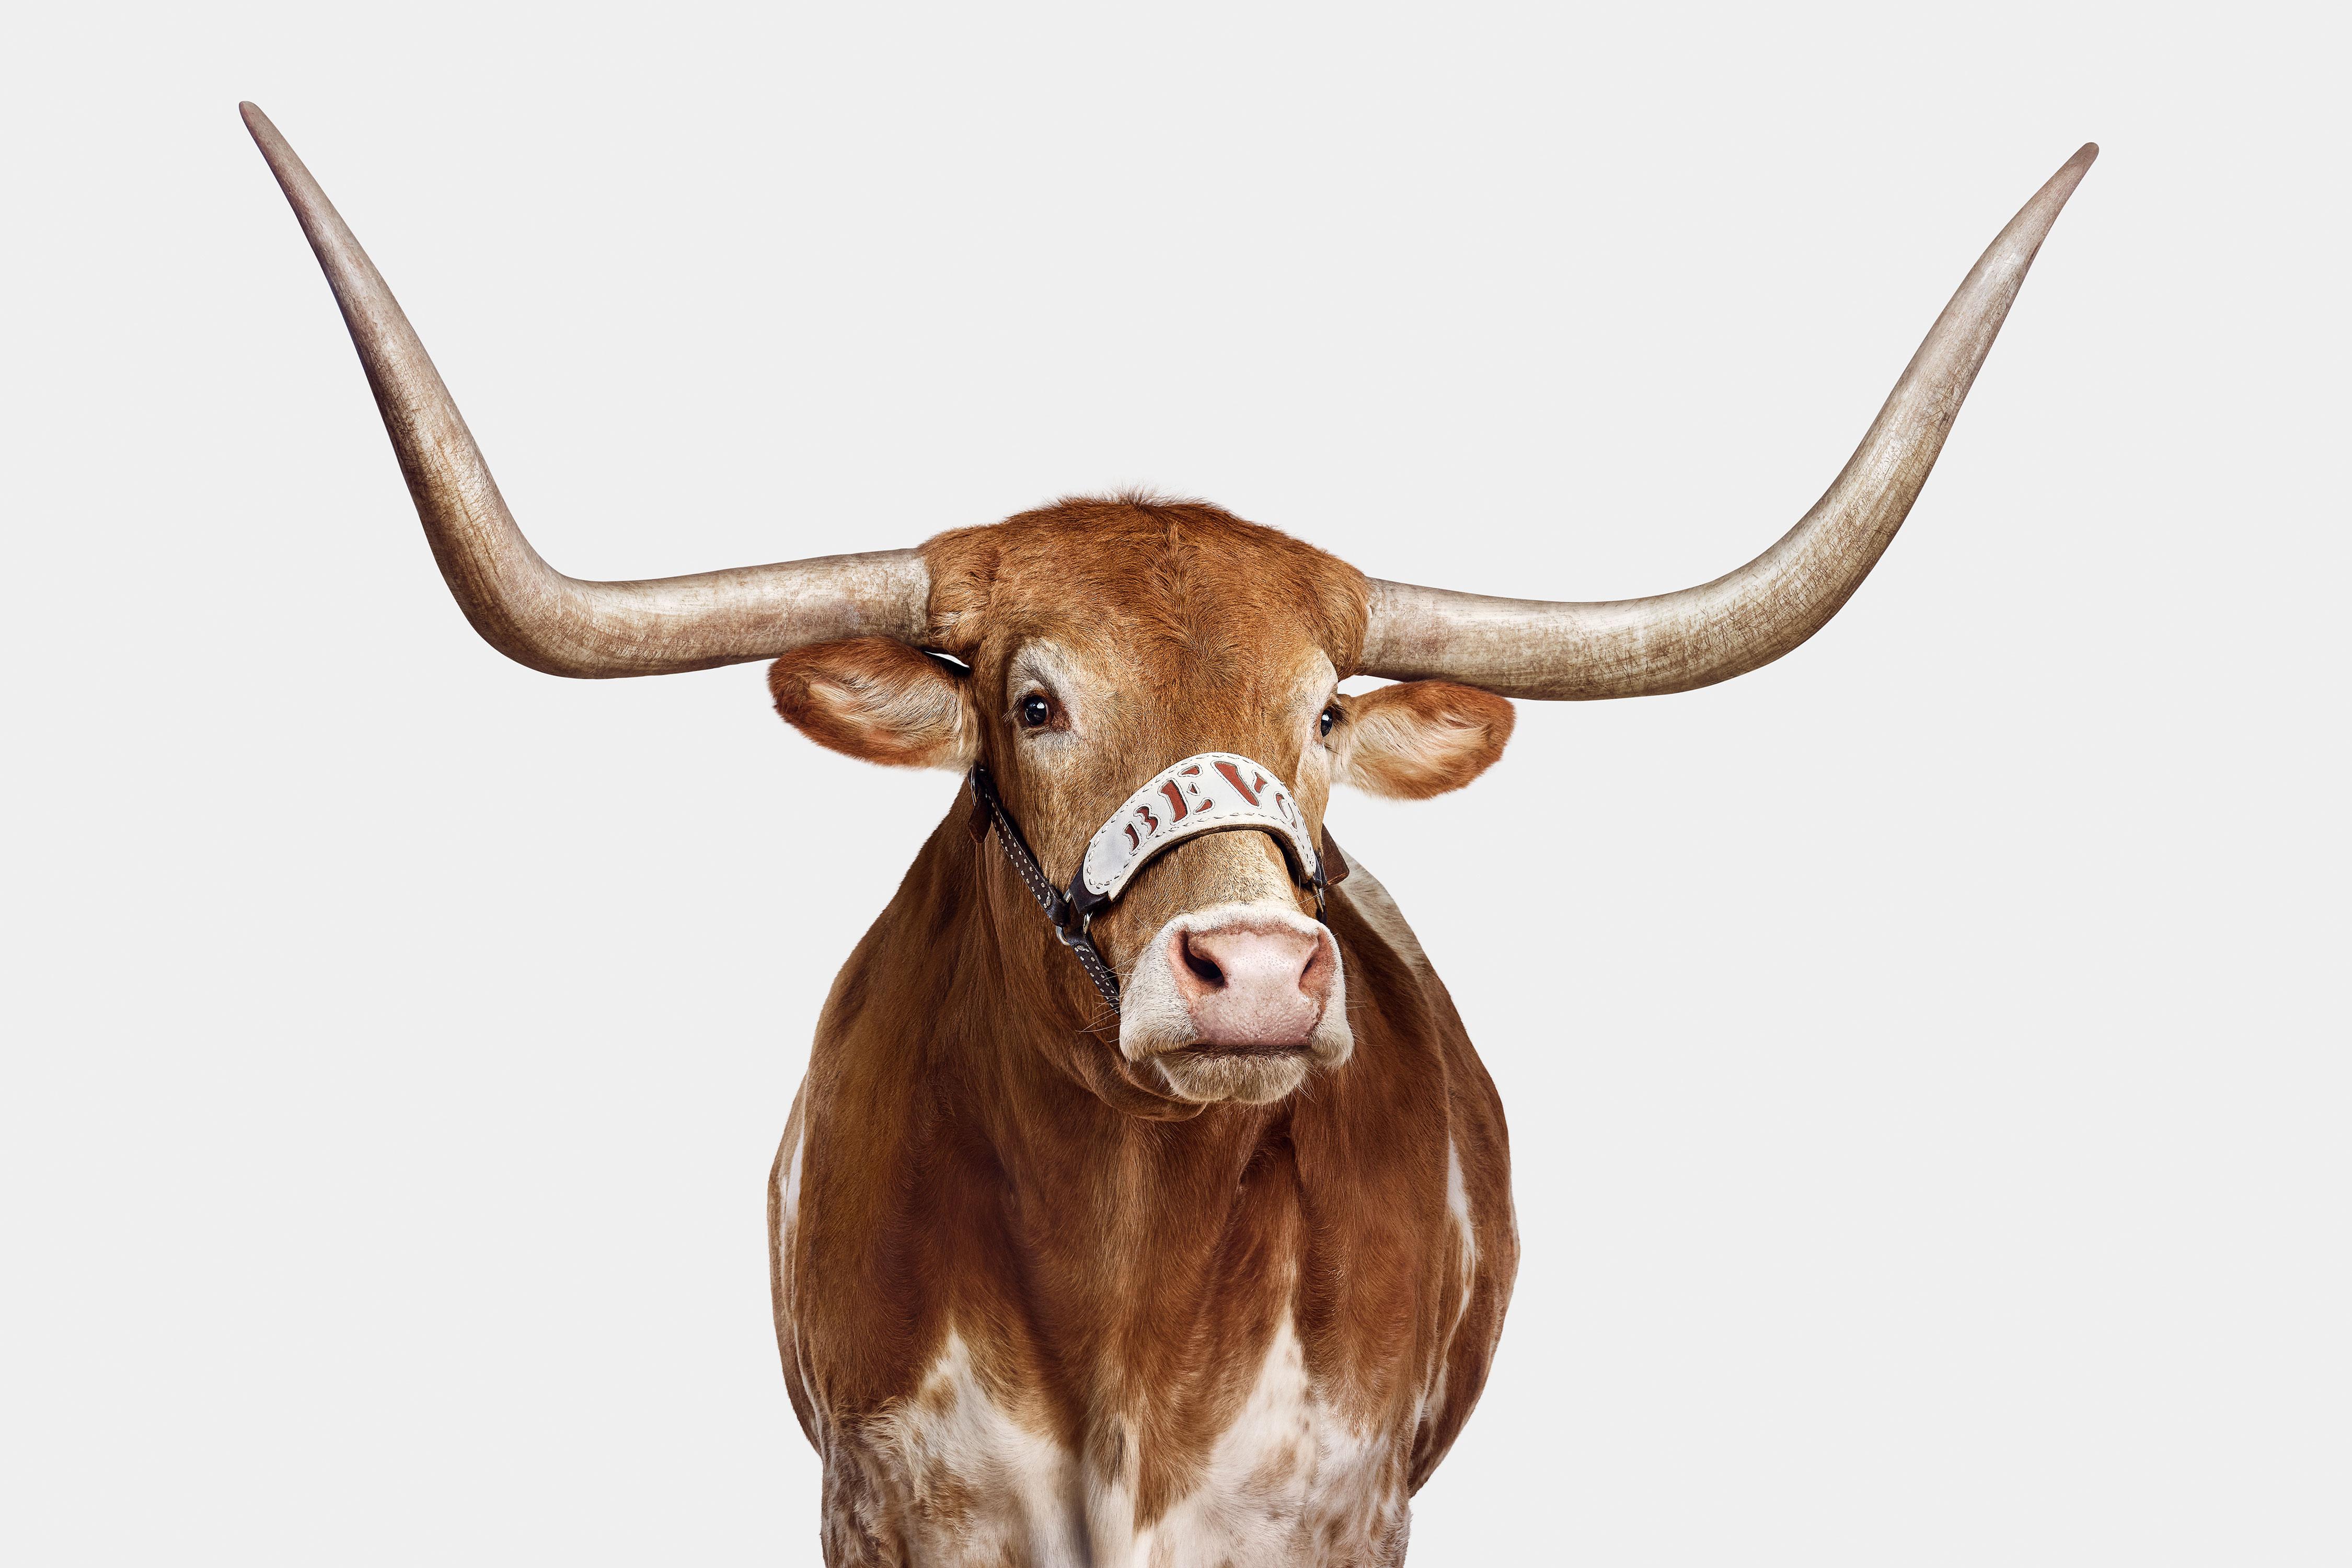 "Quel honneur ce fut de photographier la mascotte de l'Université du Texas, Bevo XV, alors qu'il n'était qu'un veau à cornes courtes en 2016. À ce moment-là, je me suis dit que ce serait formidable si j'avais l'occasion de revenir le photographier